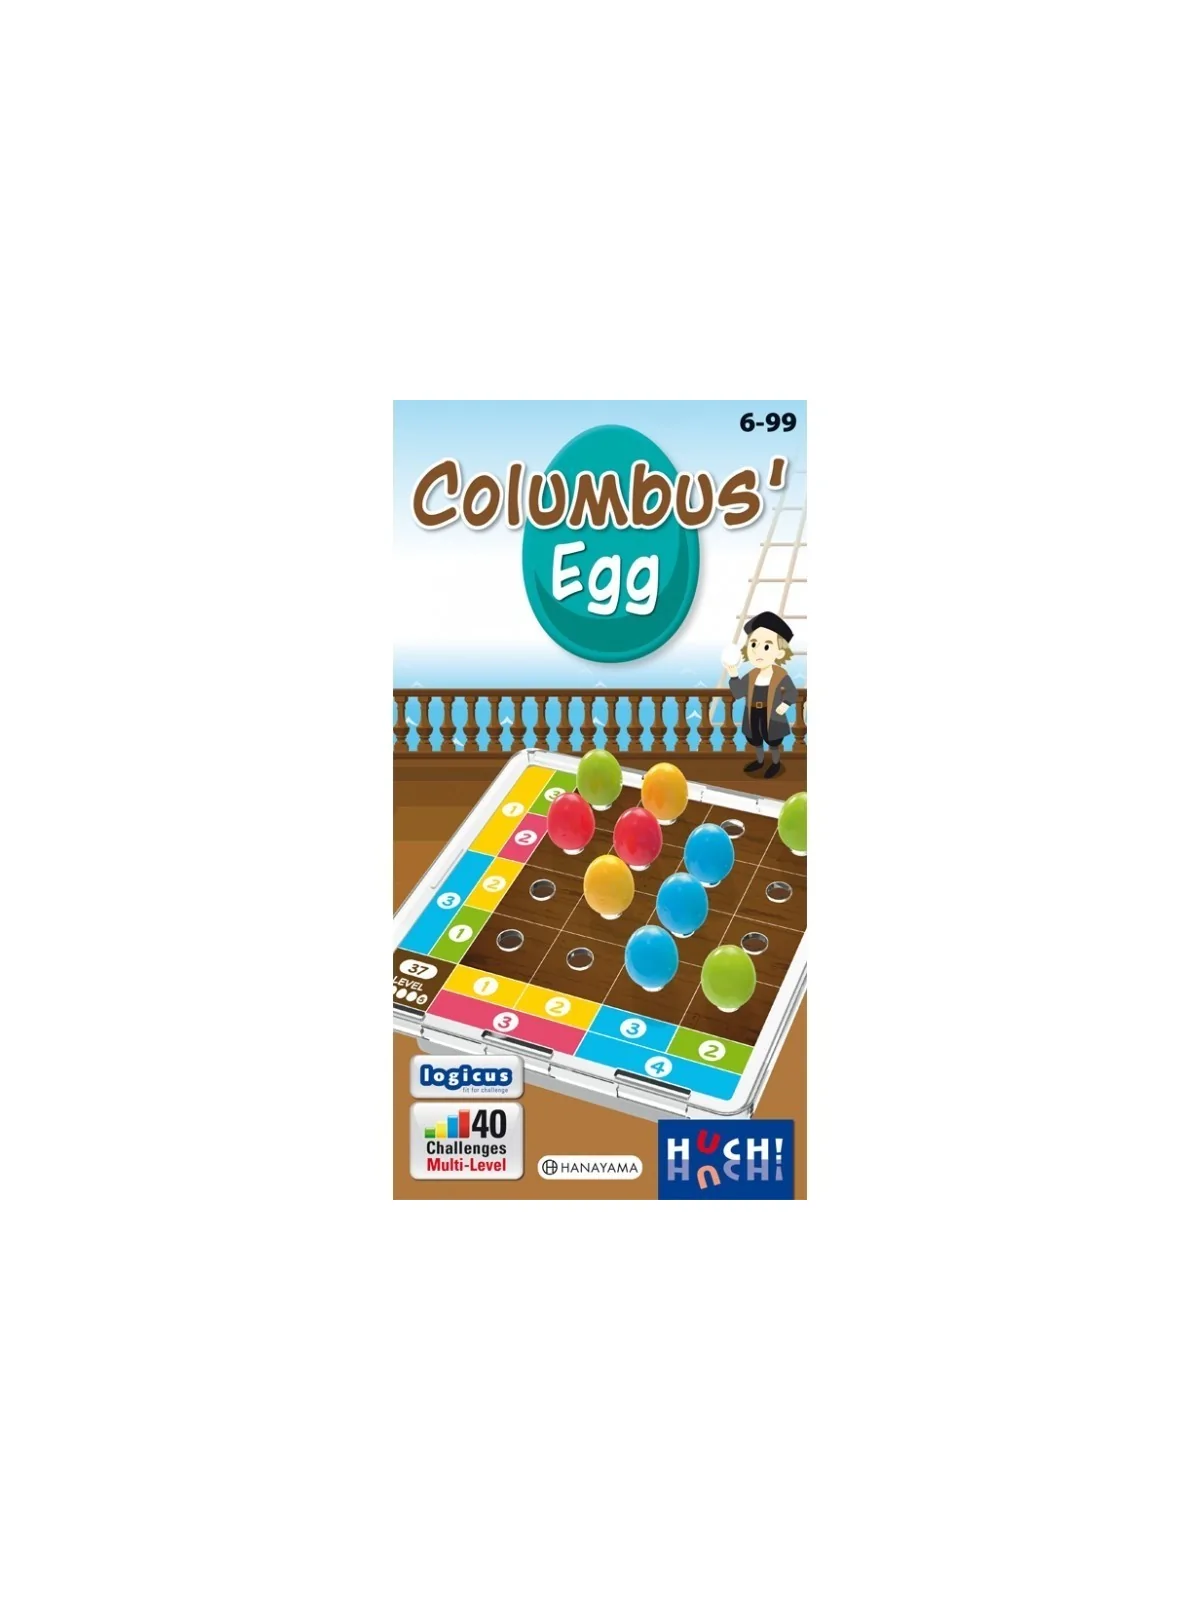 Comprar Columbus' Egg (Inglés) barato al mejor precio 14,35 € de Huch 